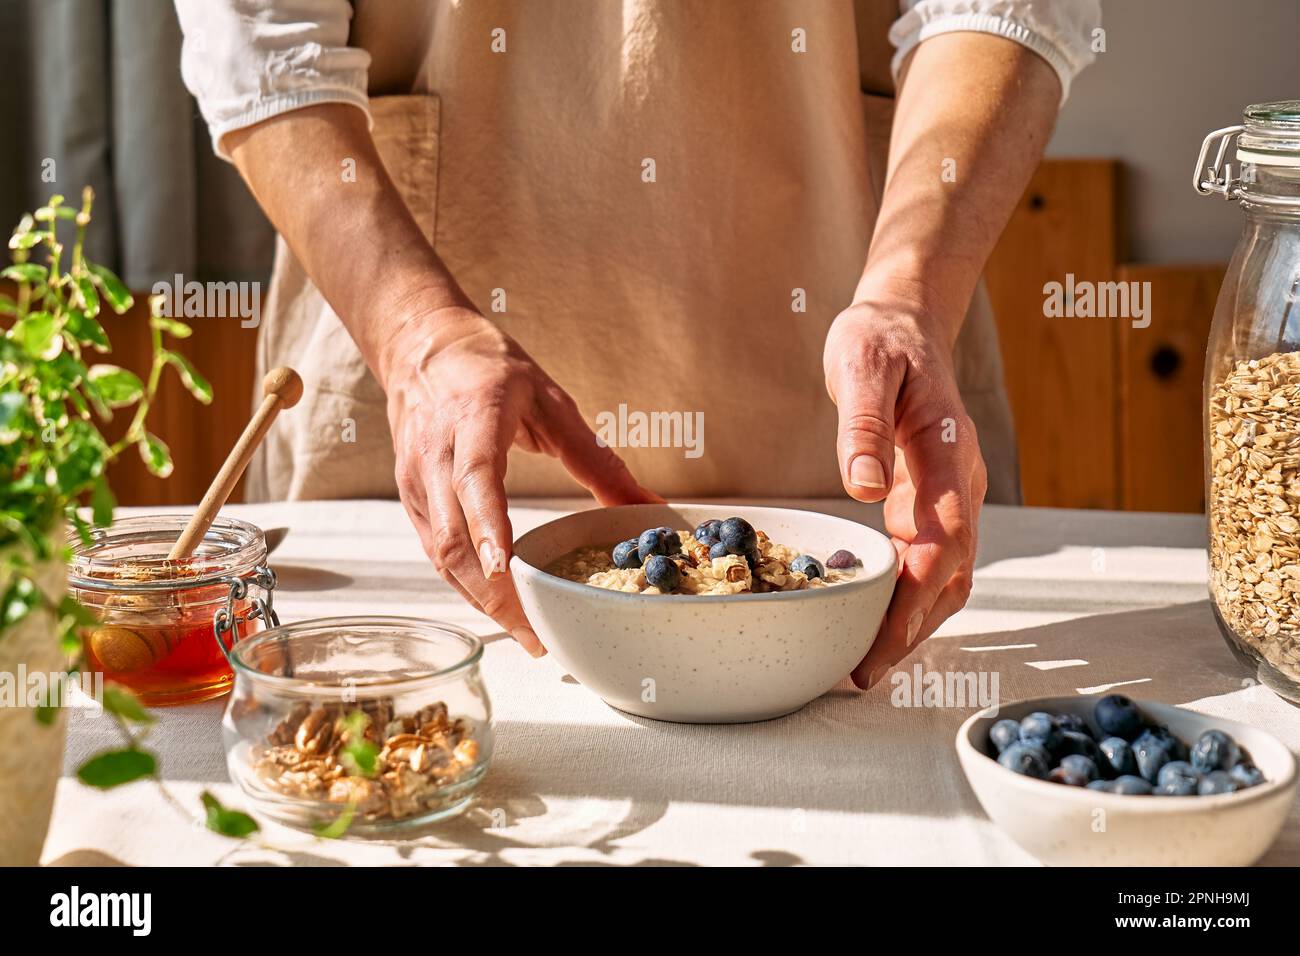 Femme préparant un petit déjeuner sain et diététique. Les mains des femmes tiennent un bol de porridge de flocons d'avoine avec des bleuets, des noix et du miel. Banque D'Images